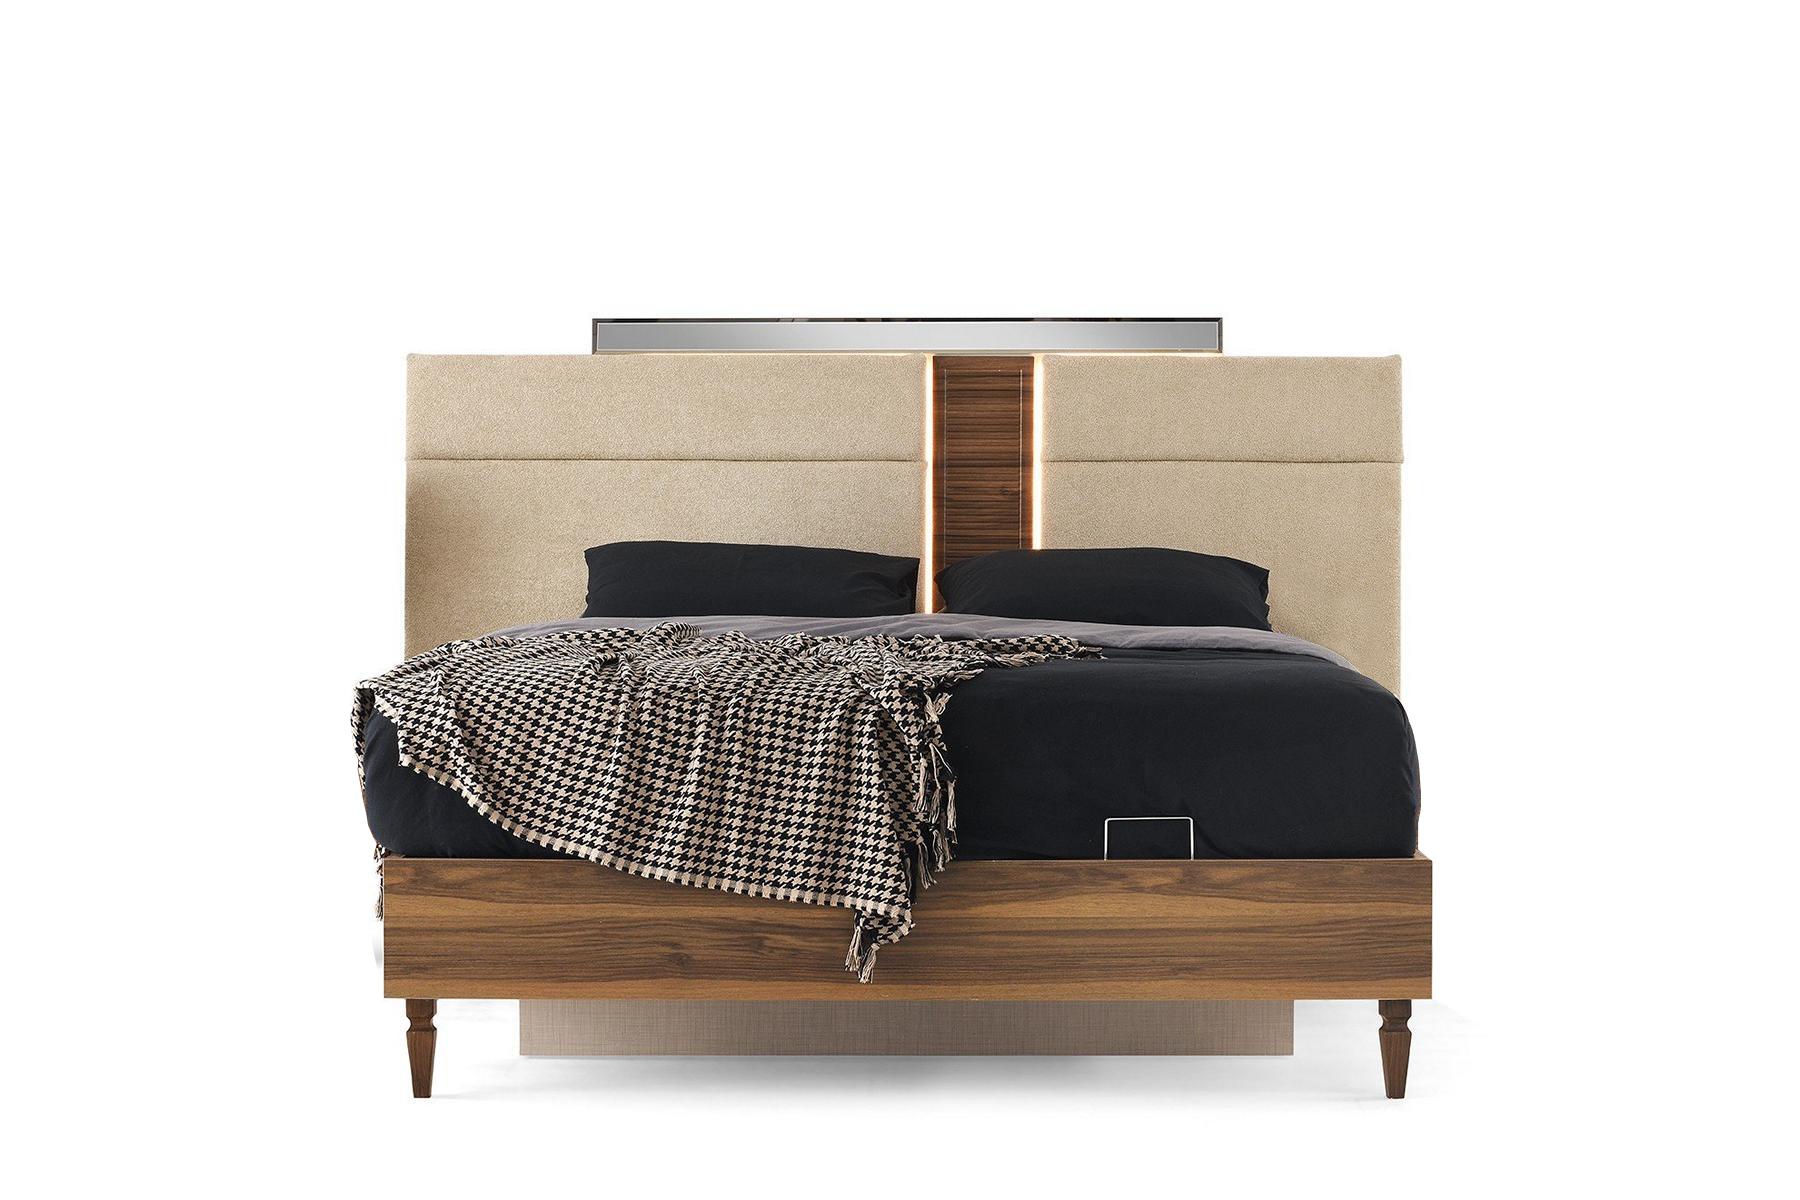 Bedroom Brown double bed Designer bed frame Luxury wooden frame